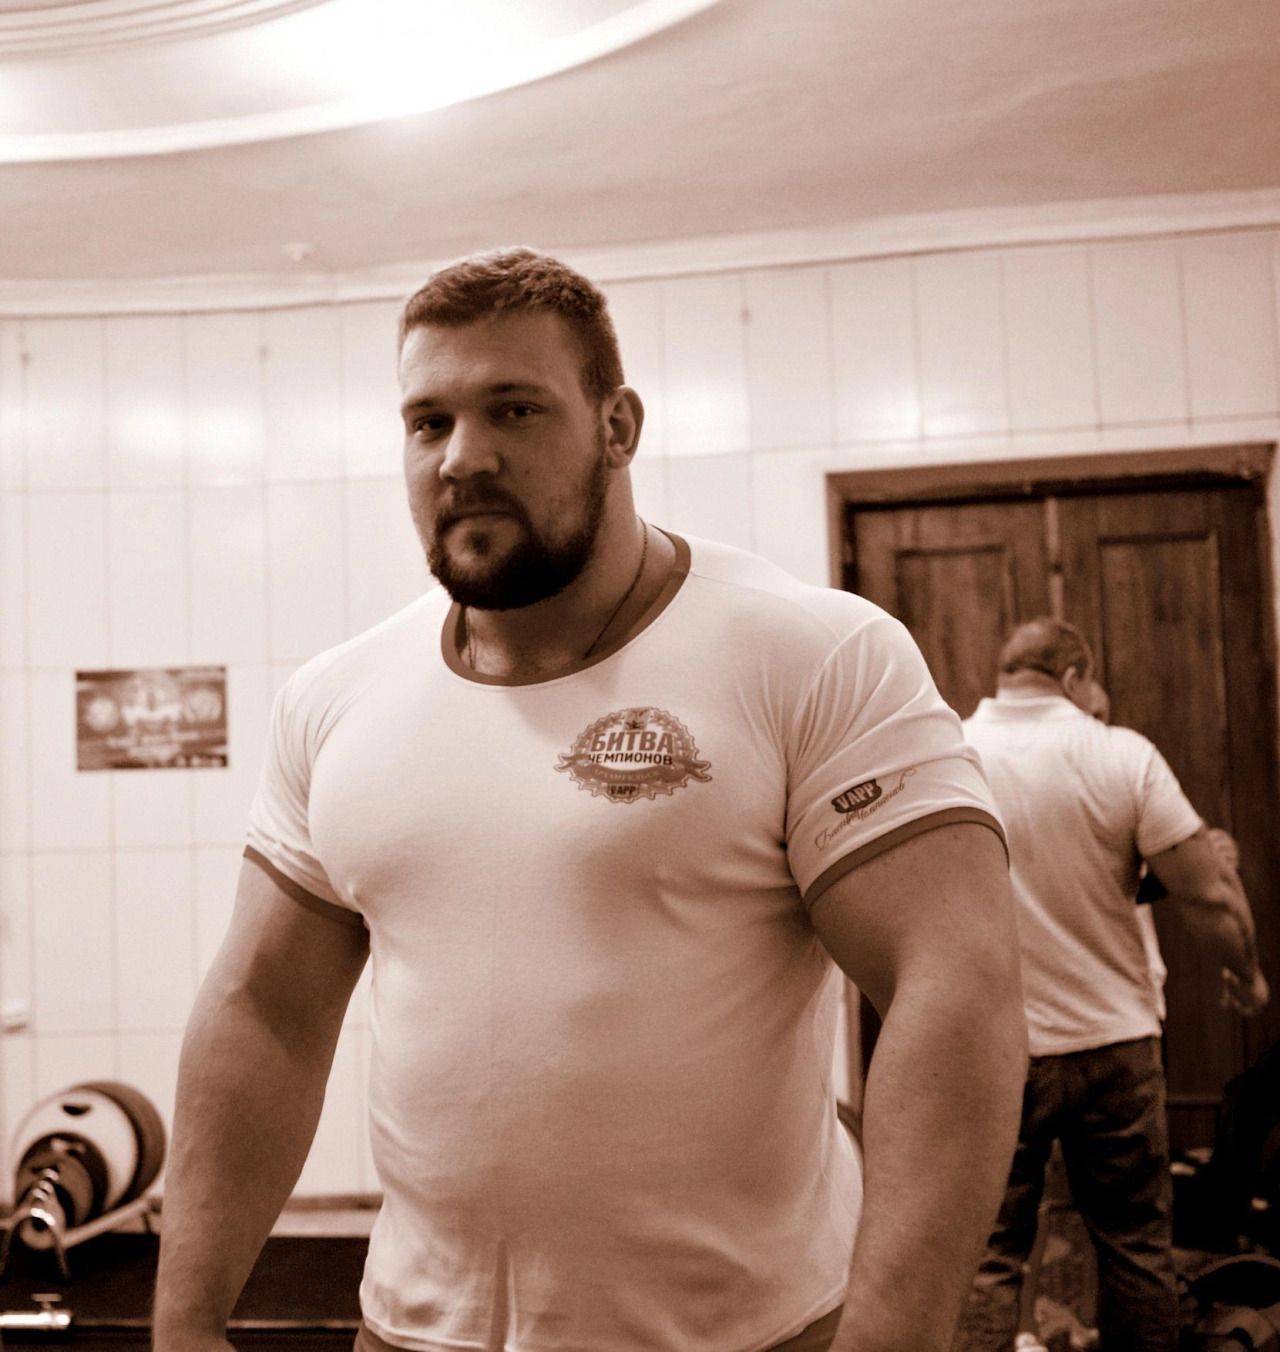 Кирилл сарычев: биография, рост, вес, фото бодибилдера из россии